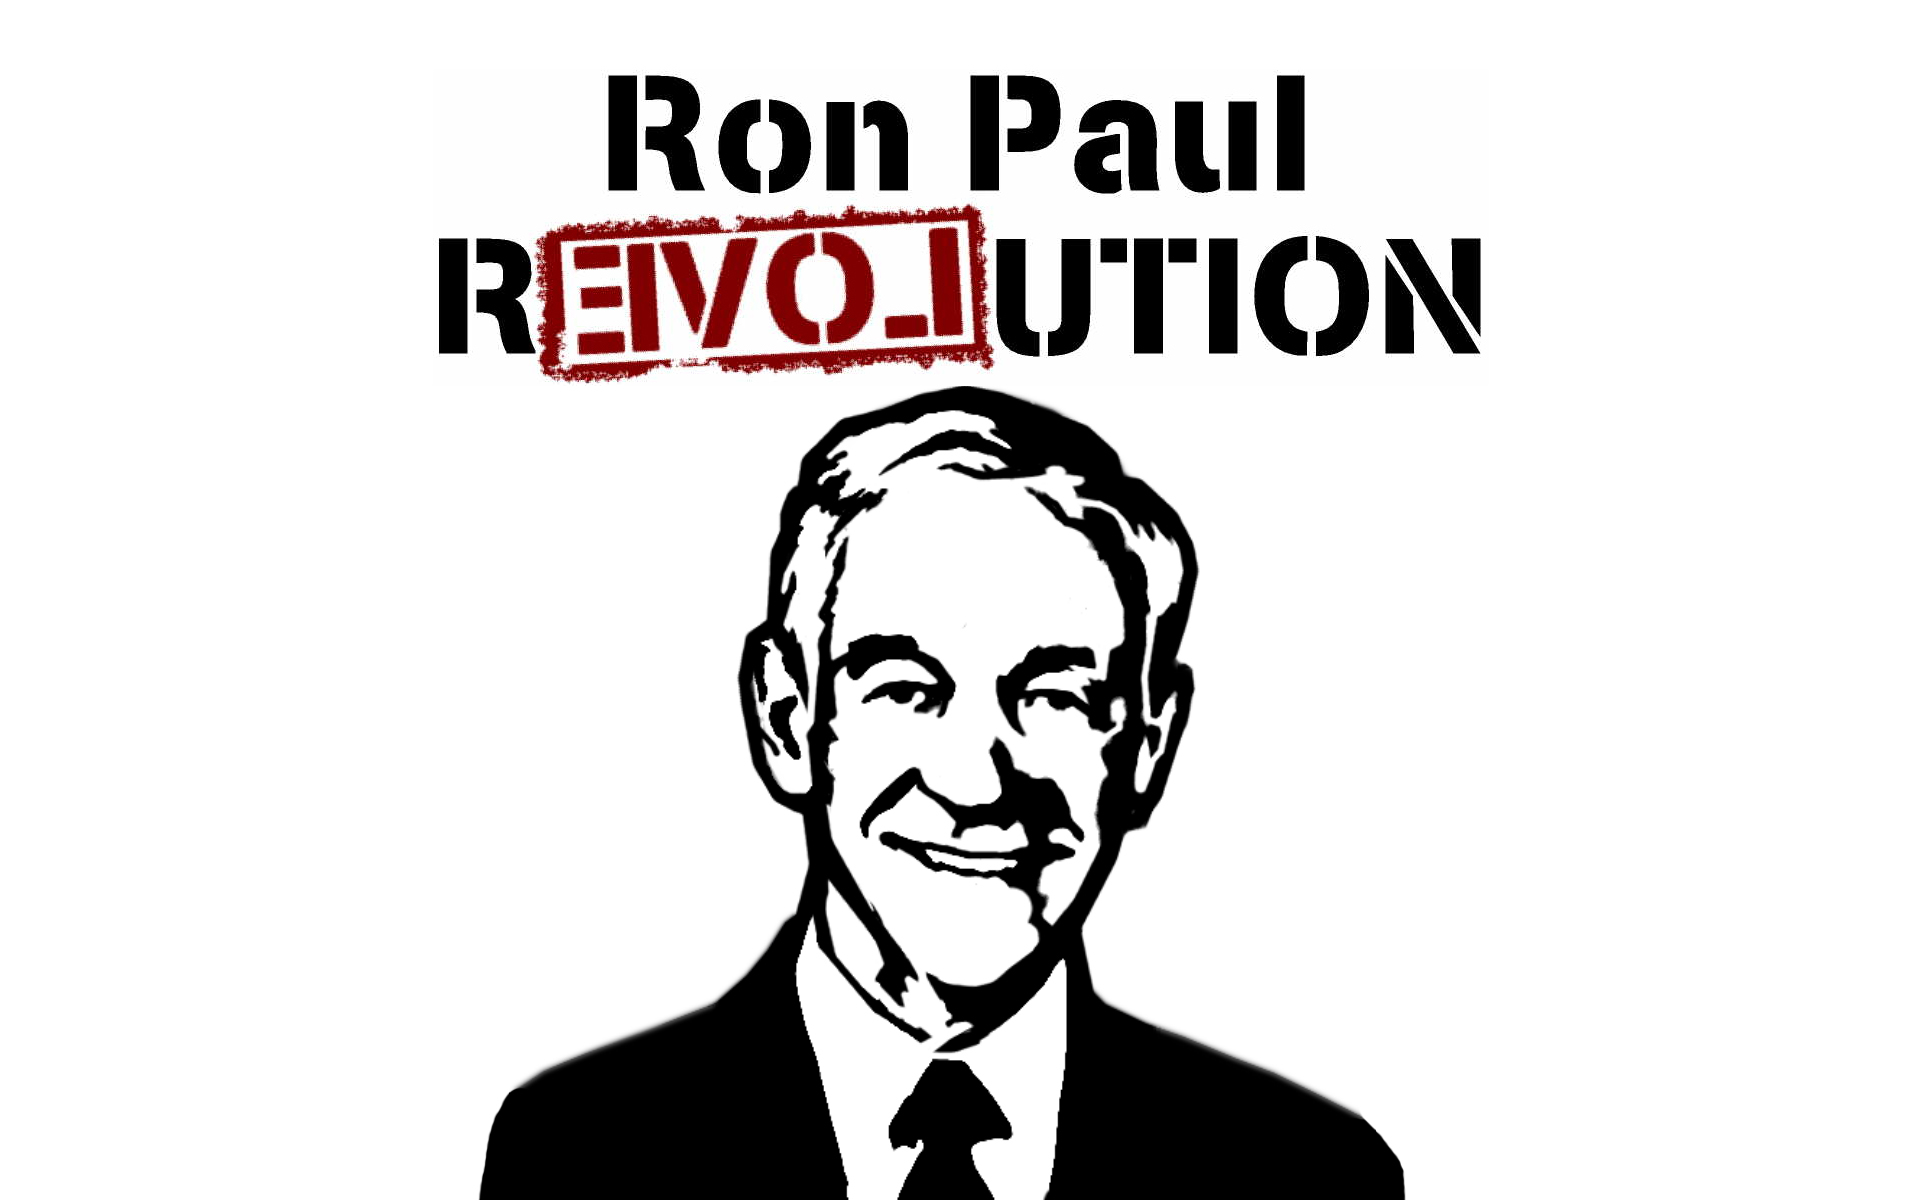 революция, США, Рон Пол - обои на рабочий стол